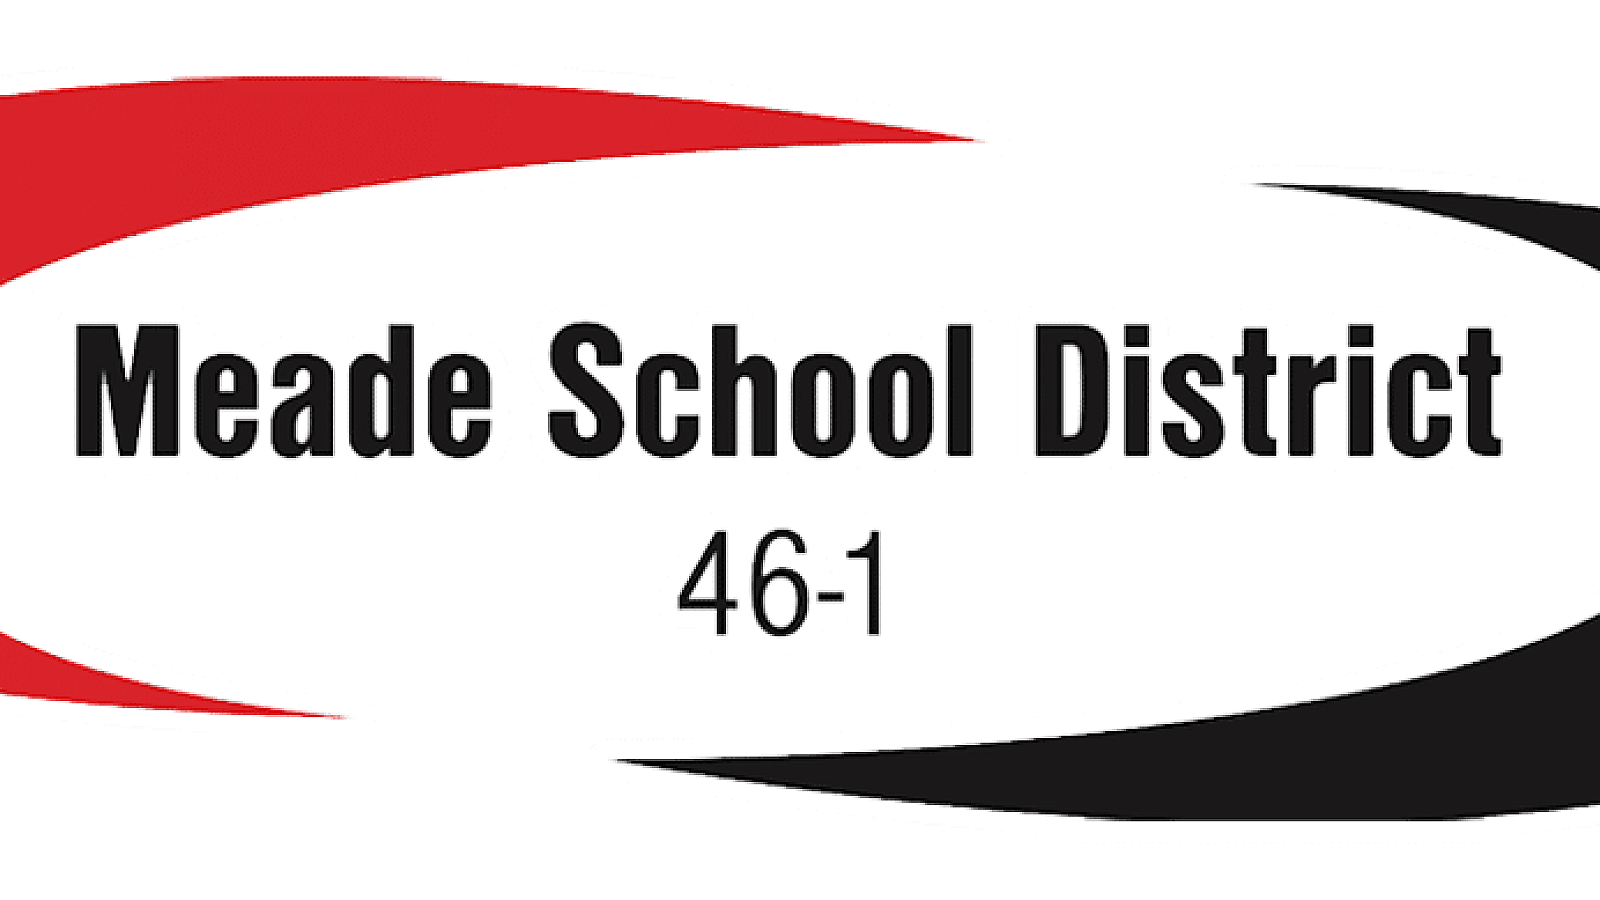 Meade School District 46-1